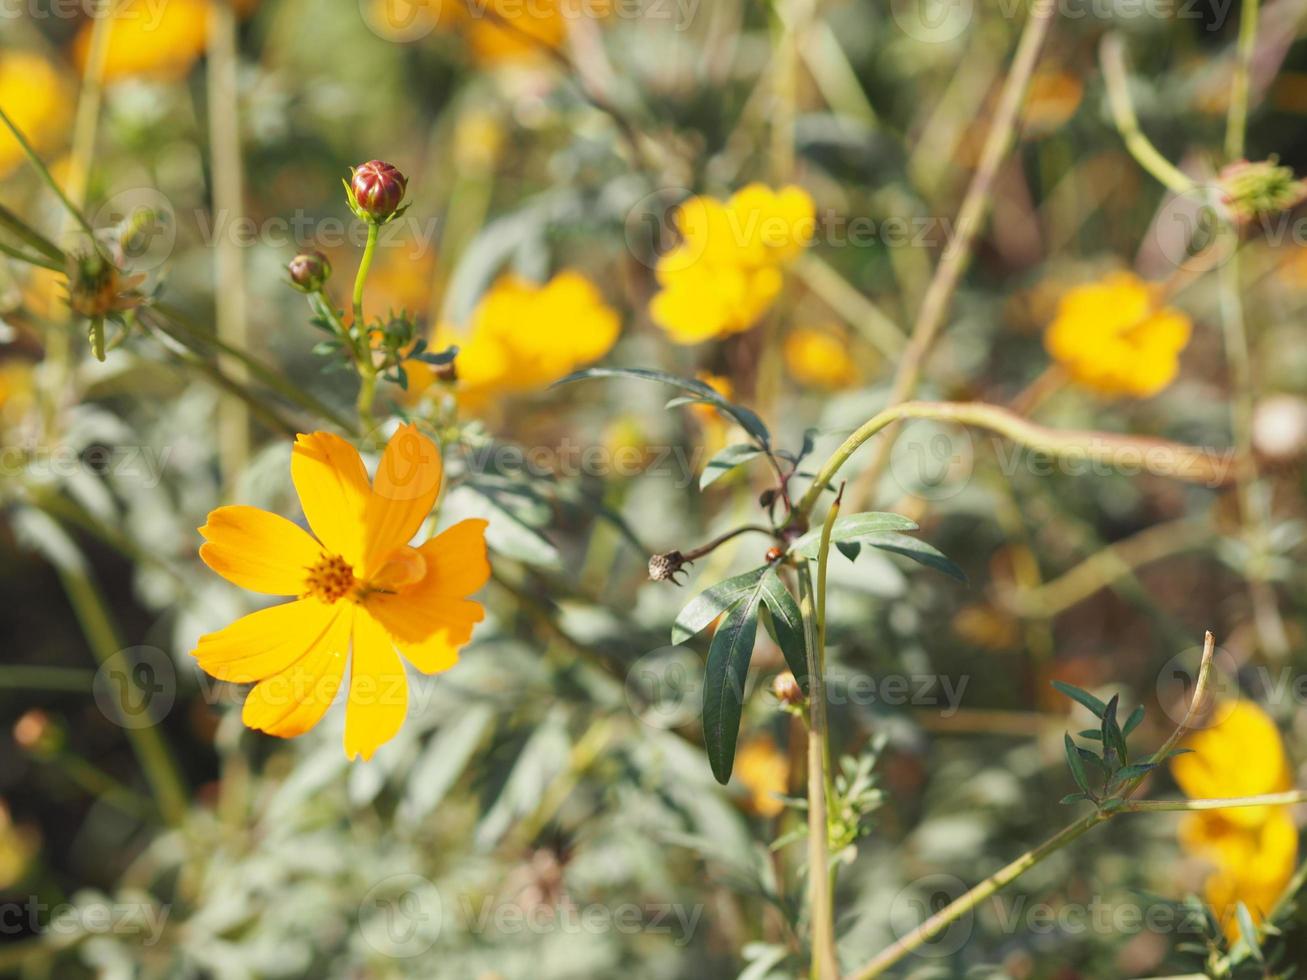 aster messicano, cosmo, compositae, cosmo sulfureo colore giallo e arancione fioritura primaverile in giardino su sfondo sfocato della natura foto